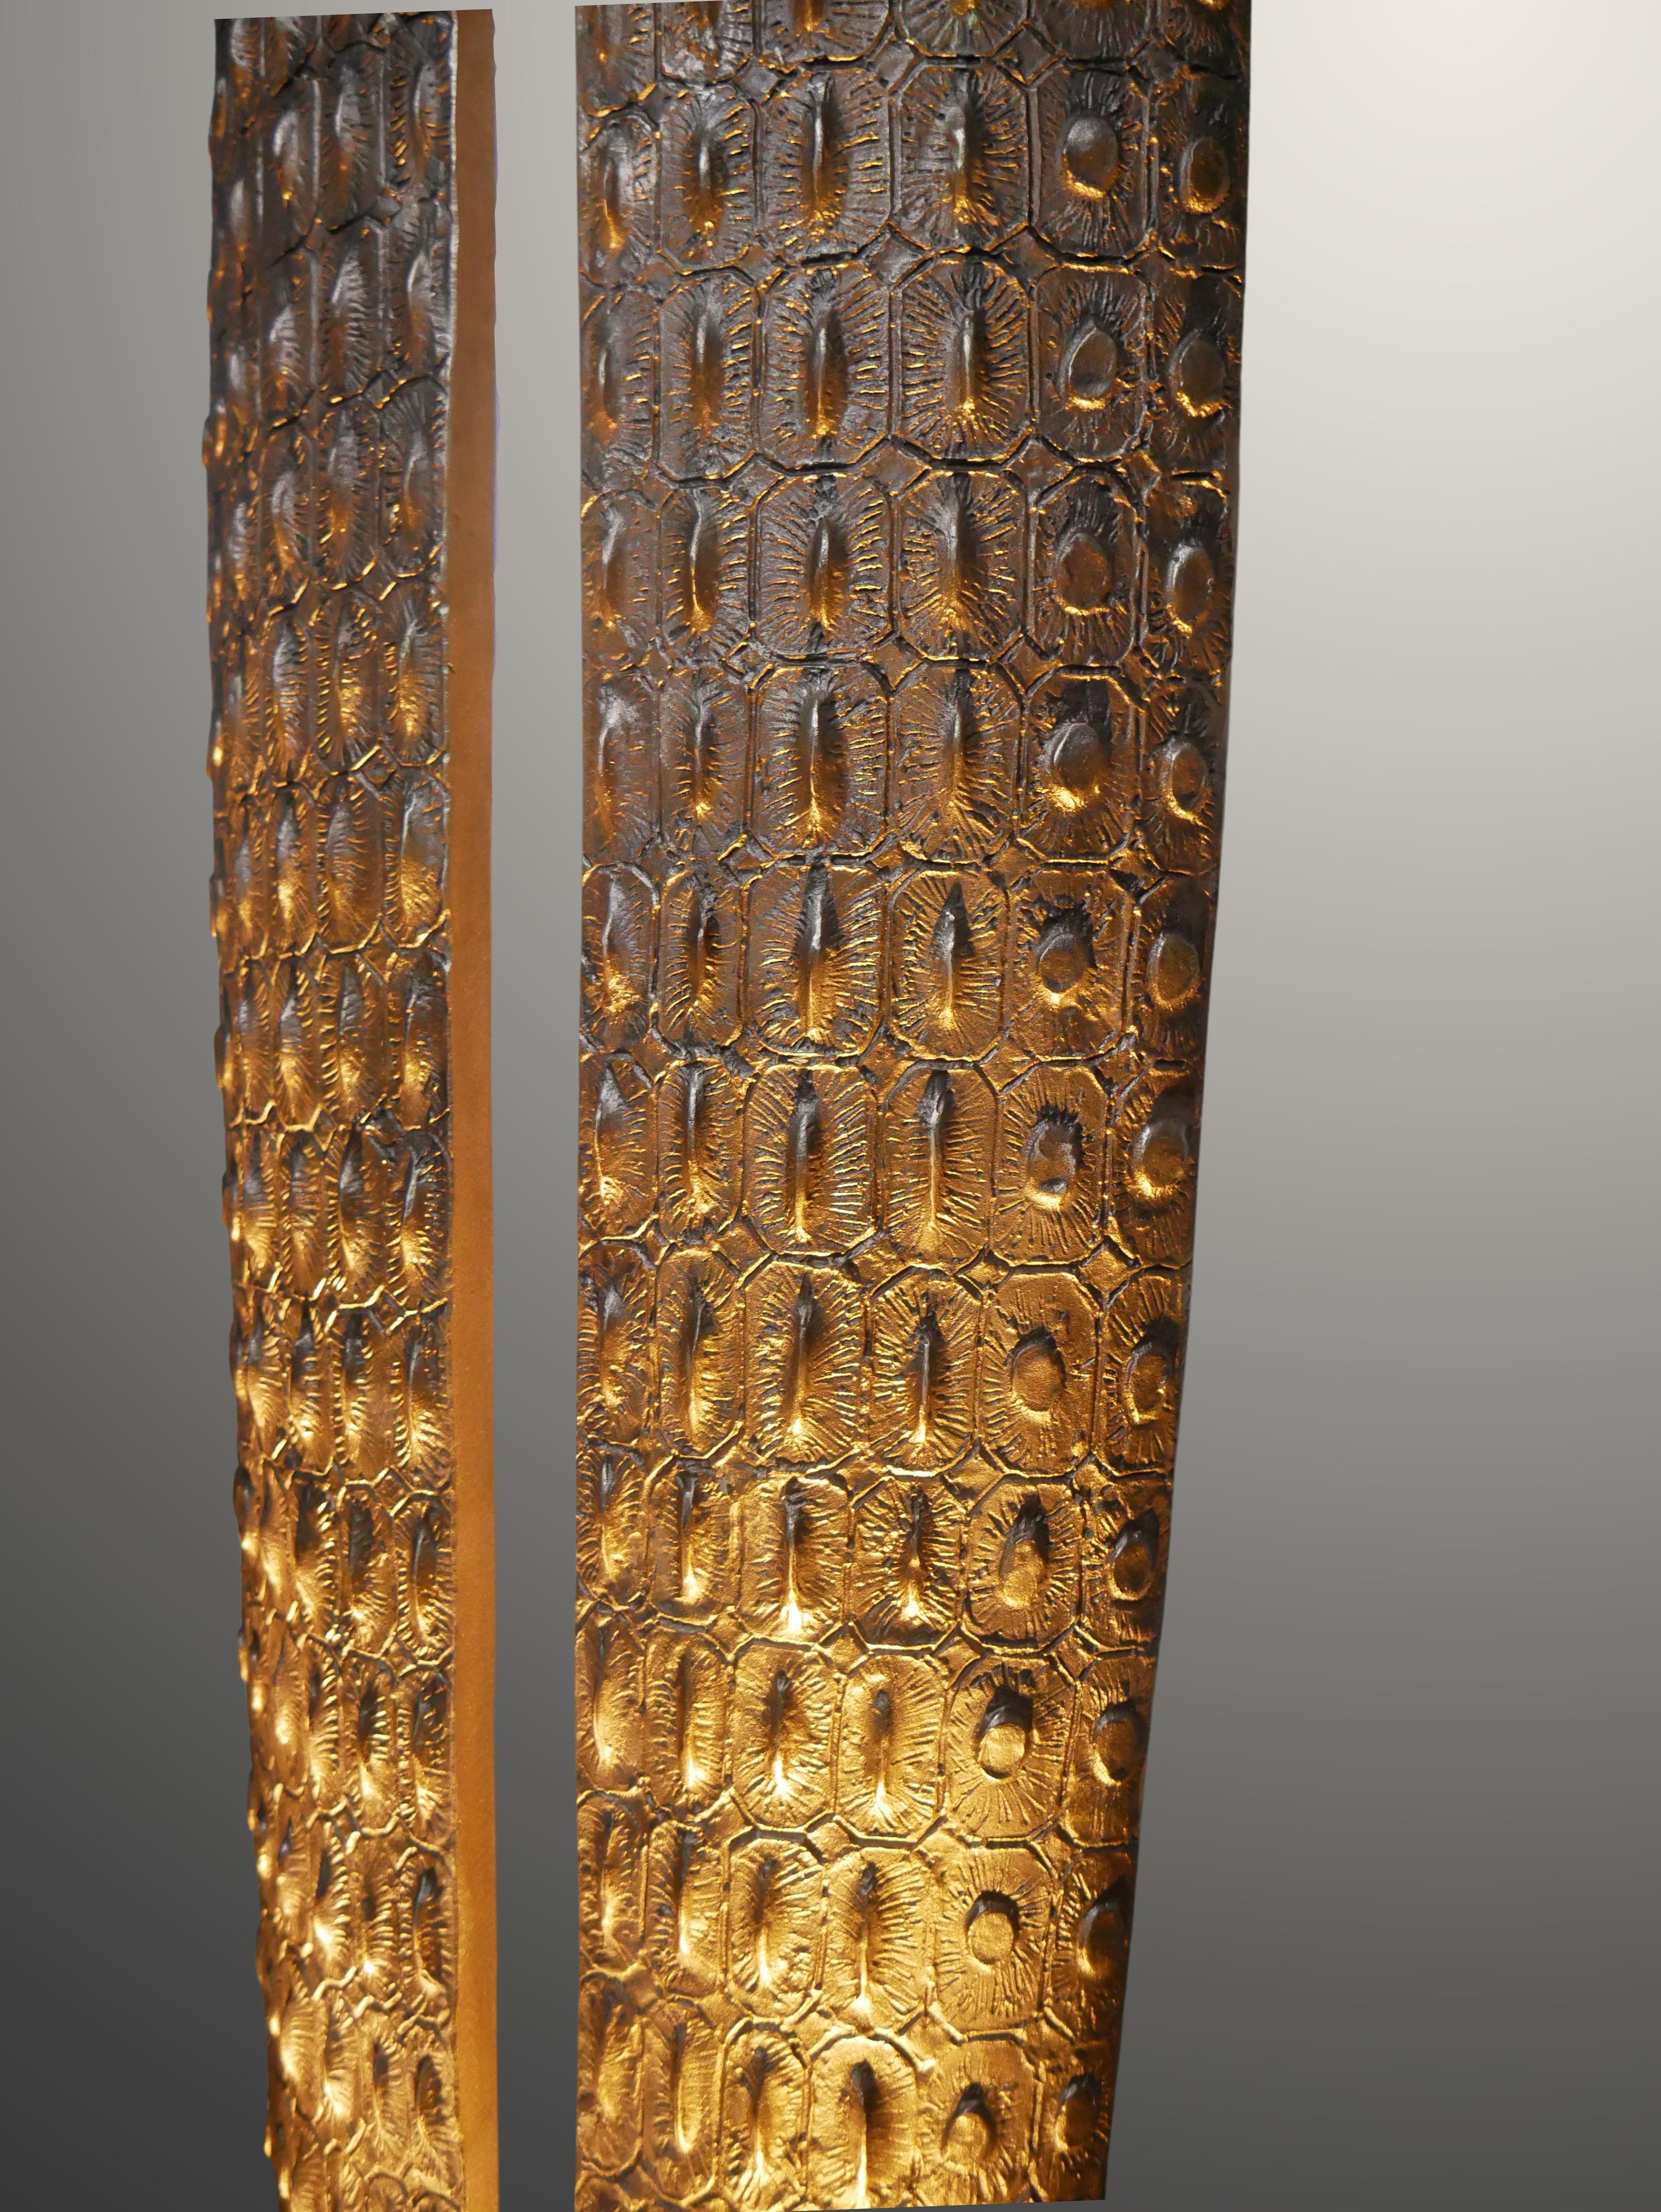 Lampadaire en bronze doré dont la courbe naturelle rappelle la texture en écailles de la peau de crocodile, trouvant sans effort l'équilibre entre formes rationnelles et organiques. Fabriqué à la main par le sculpteur français Patrick Laroche dans